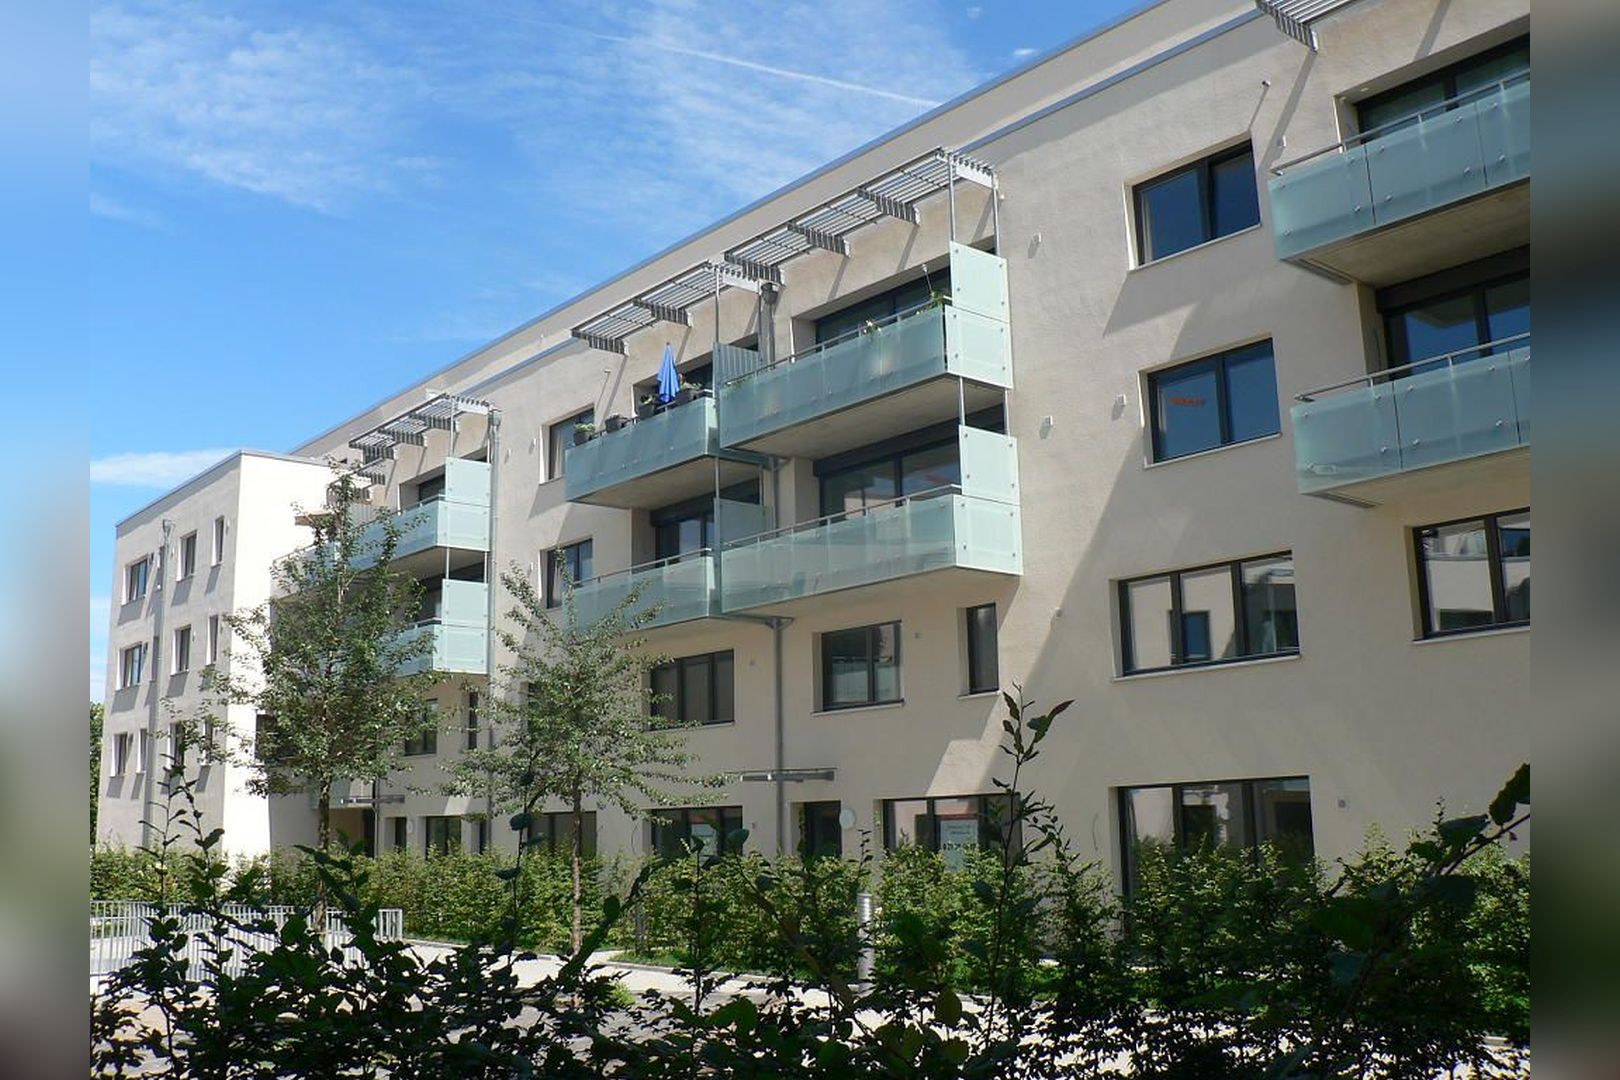 Immobilie Nr.Hilden 005 - 2-Raum-Maisonette-Wohnung mit Terrasse & Gärtchen - Bild 6.jpg